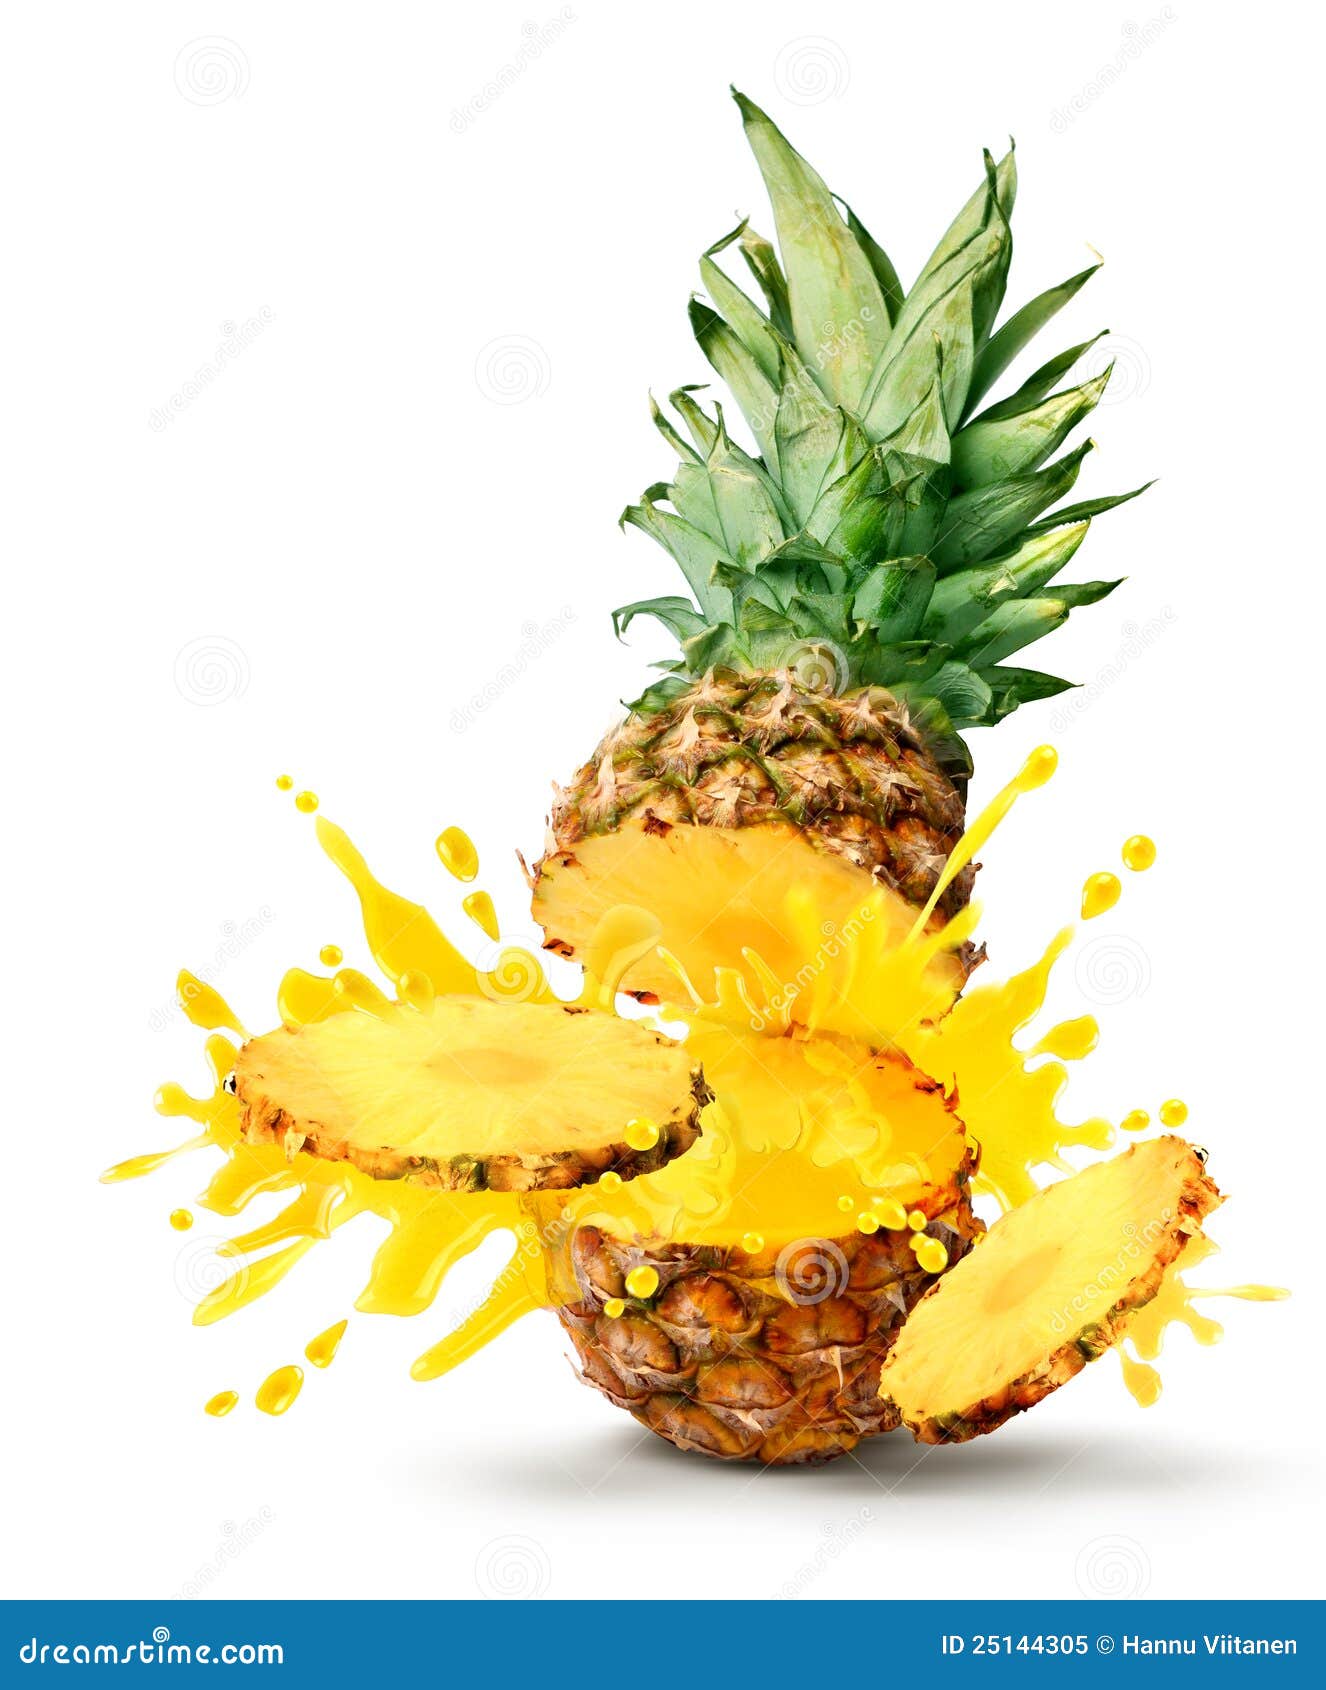 pineapple juice burst